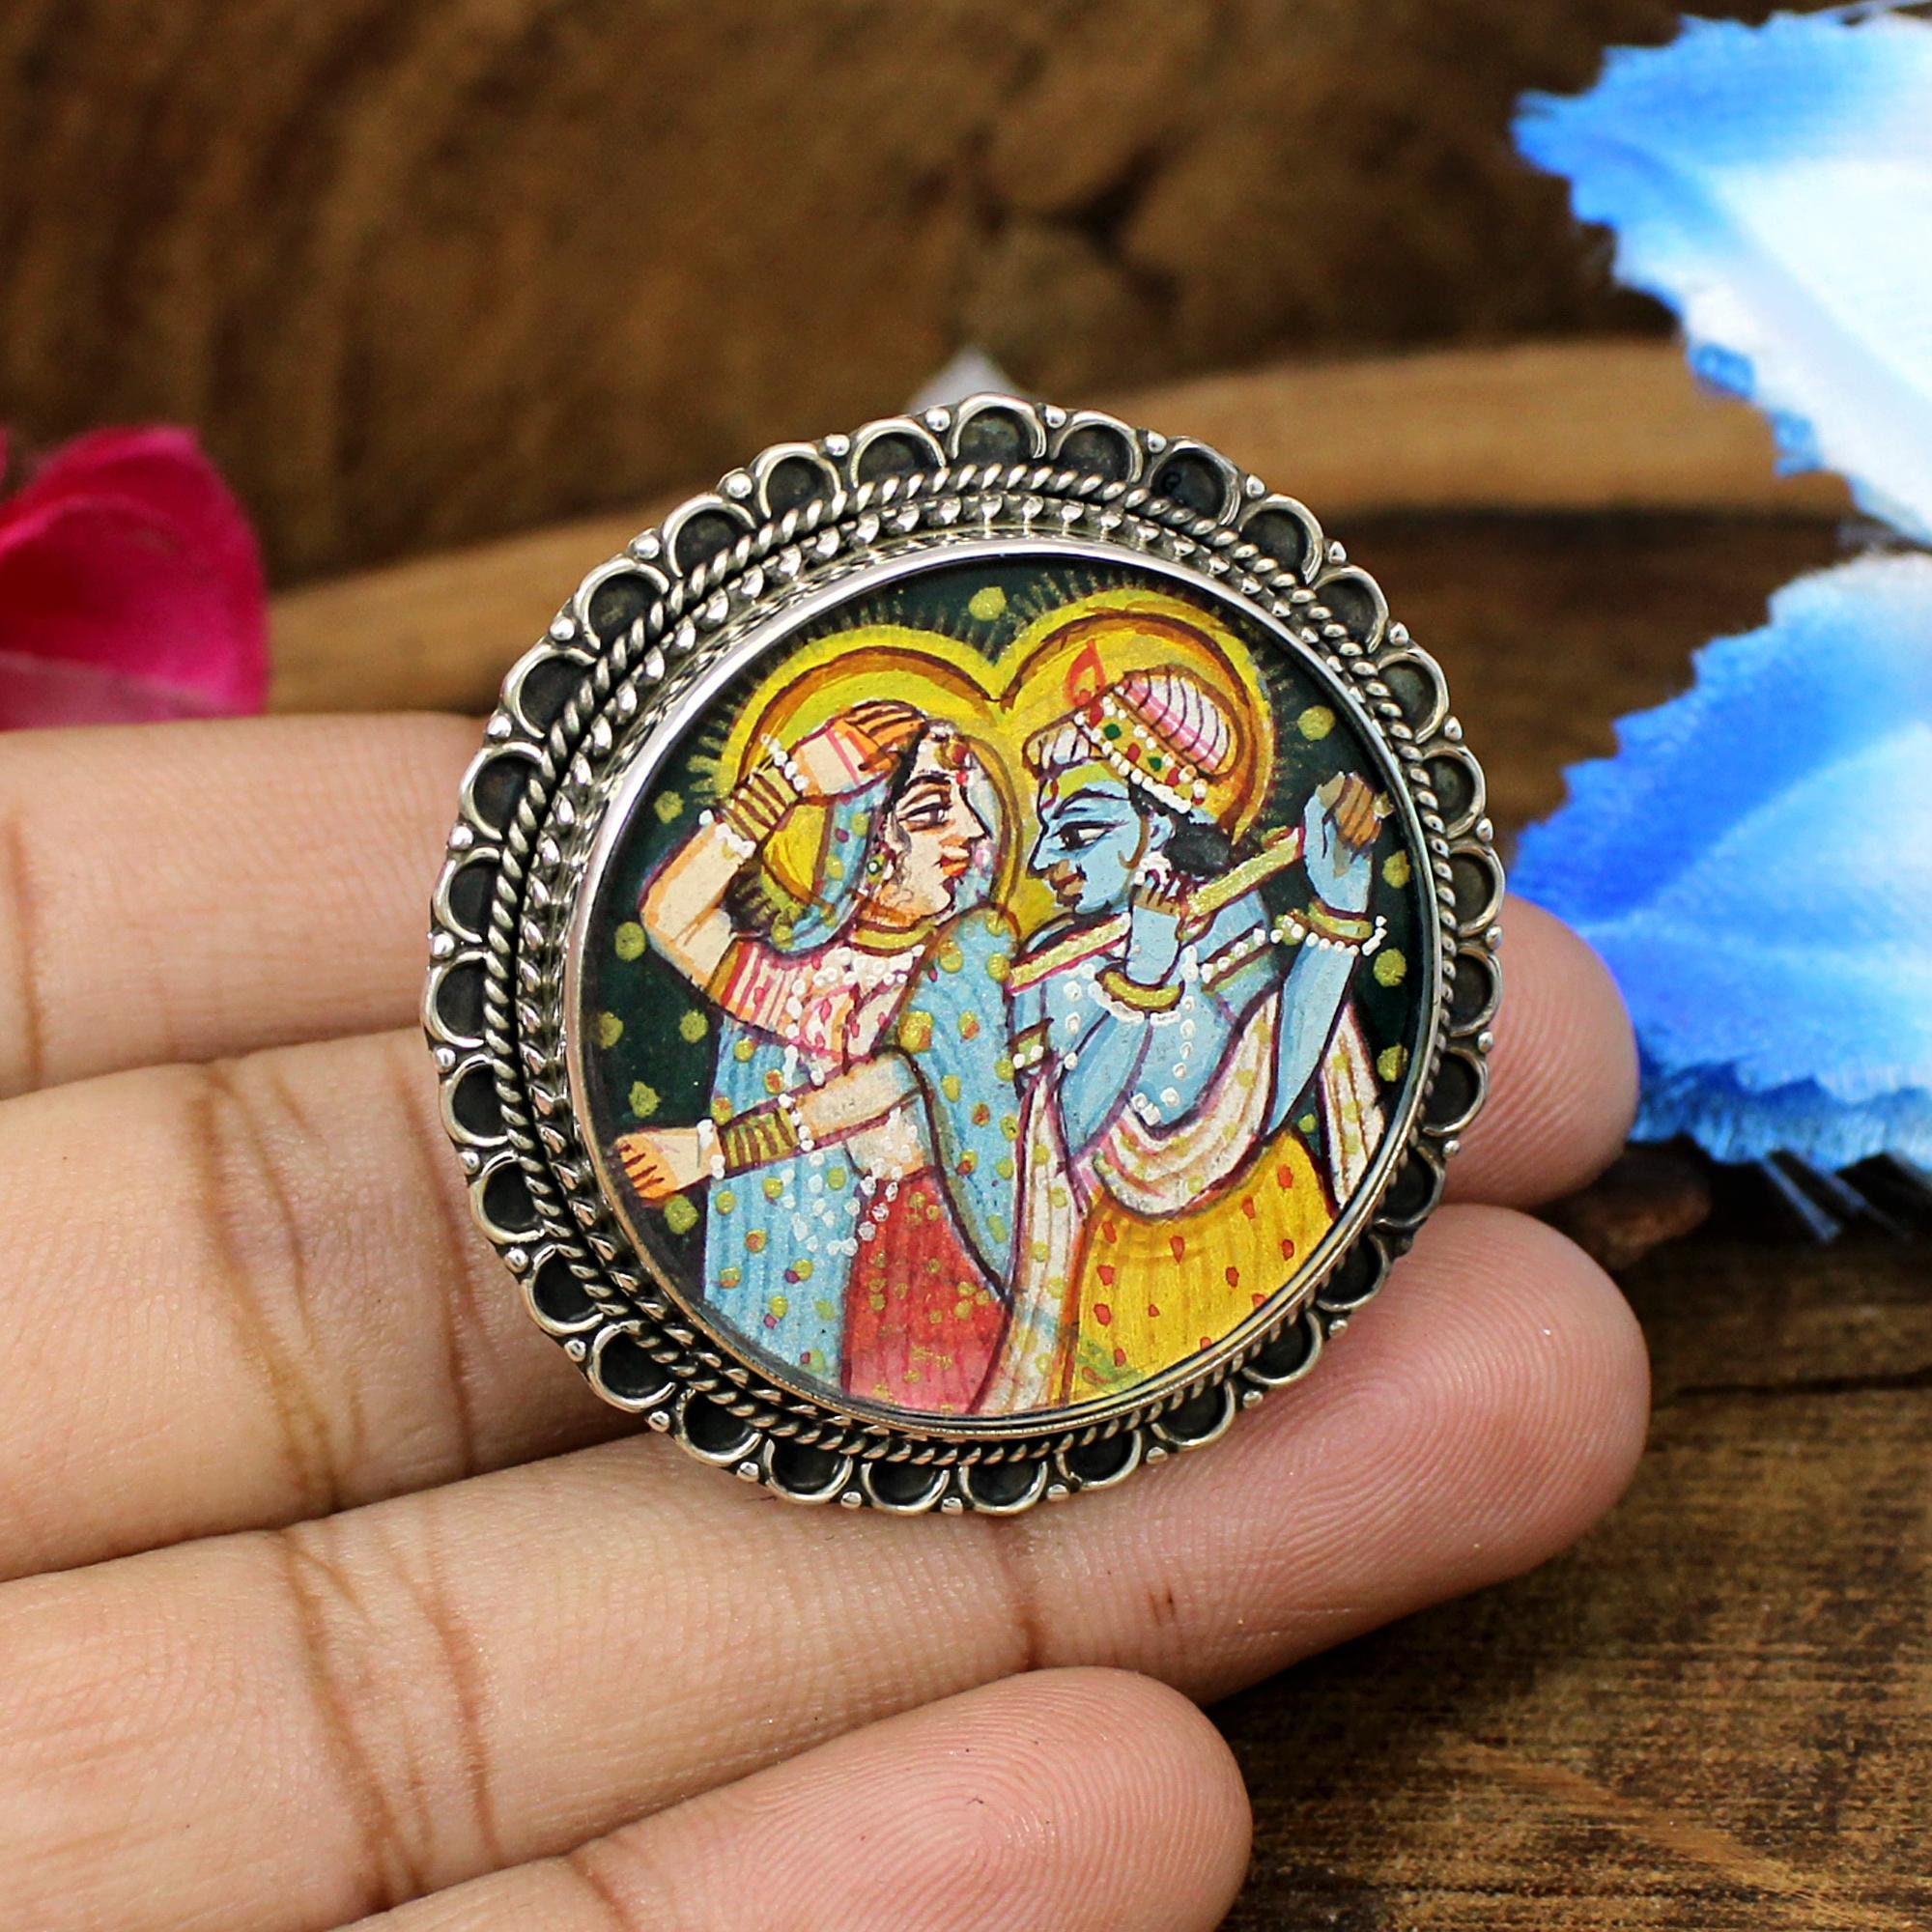 Double Sided Key Ring - Bal Gopal and Radha Krishna